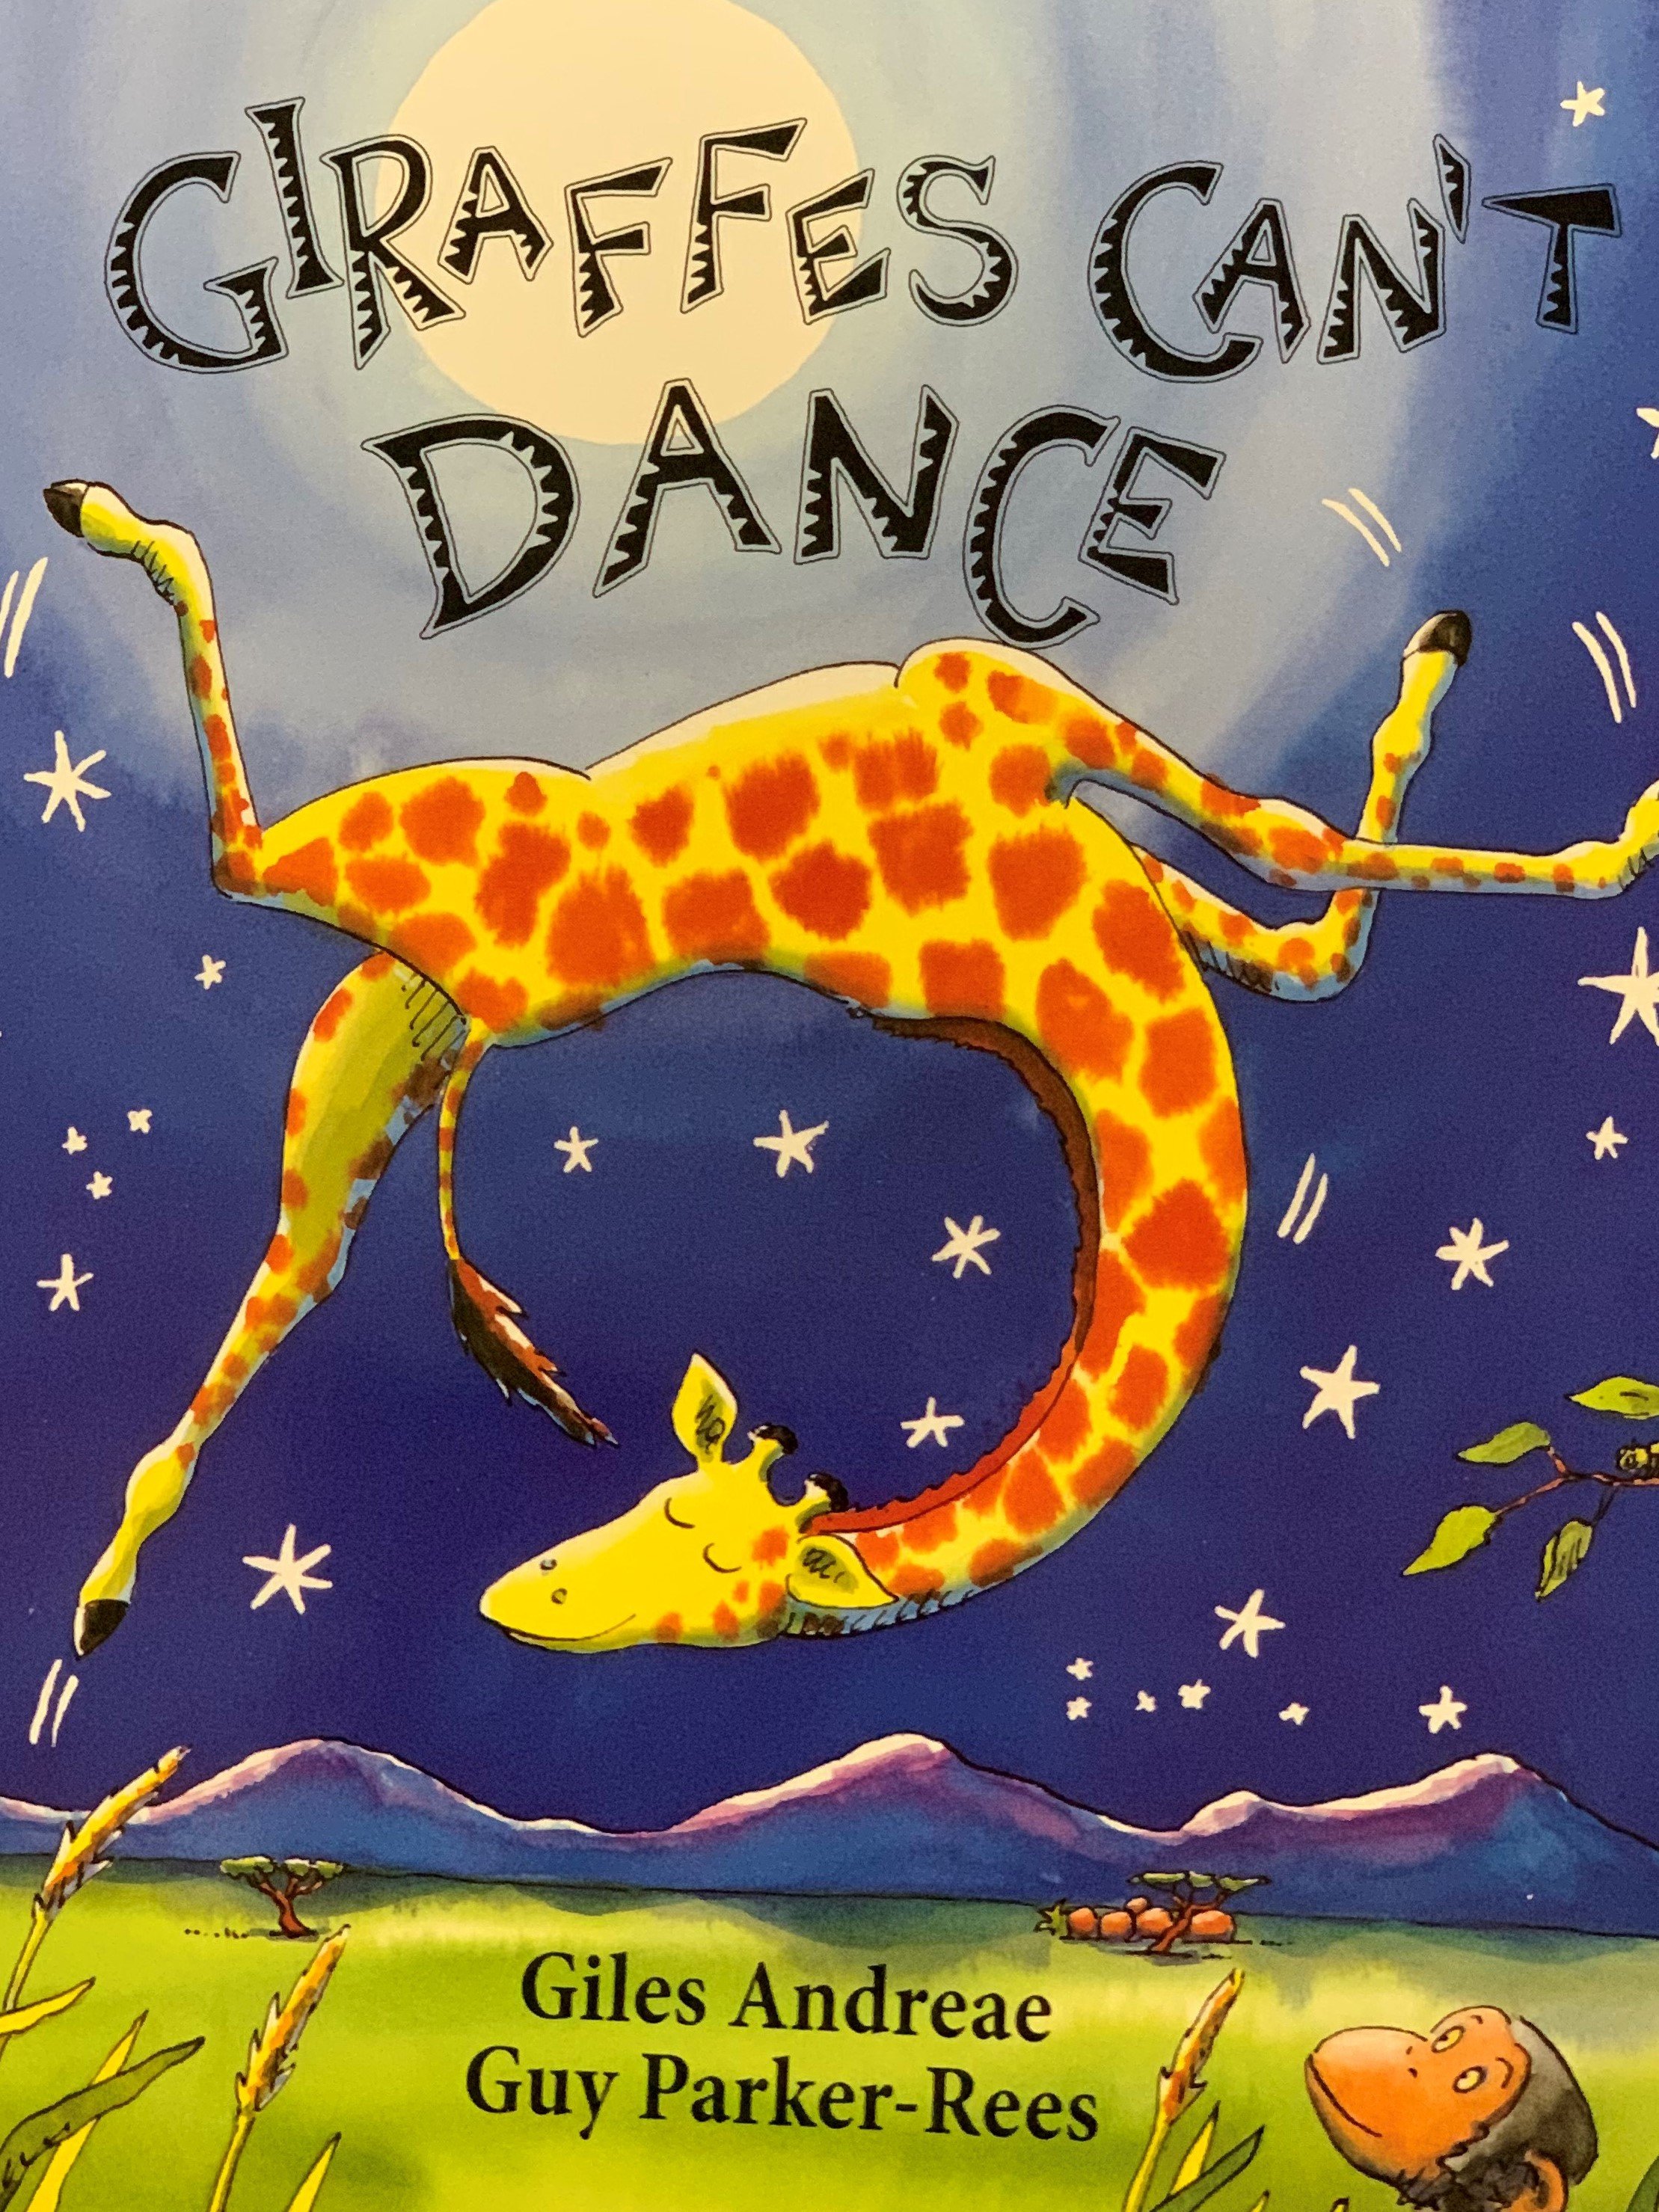 Giraffes Cant Dance.jpg